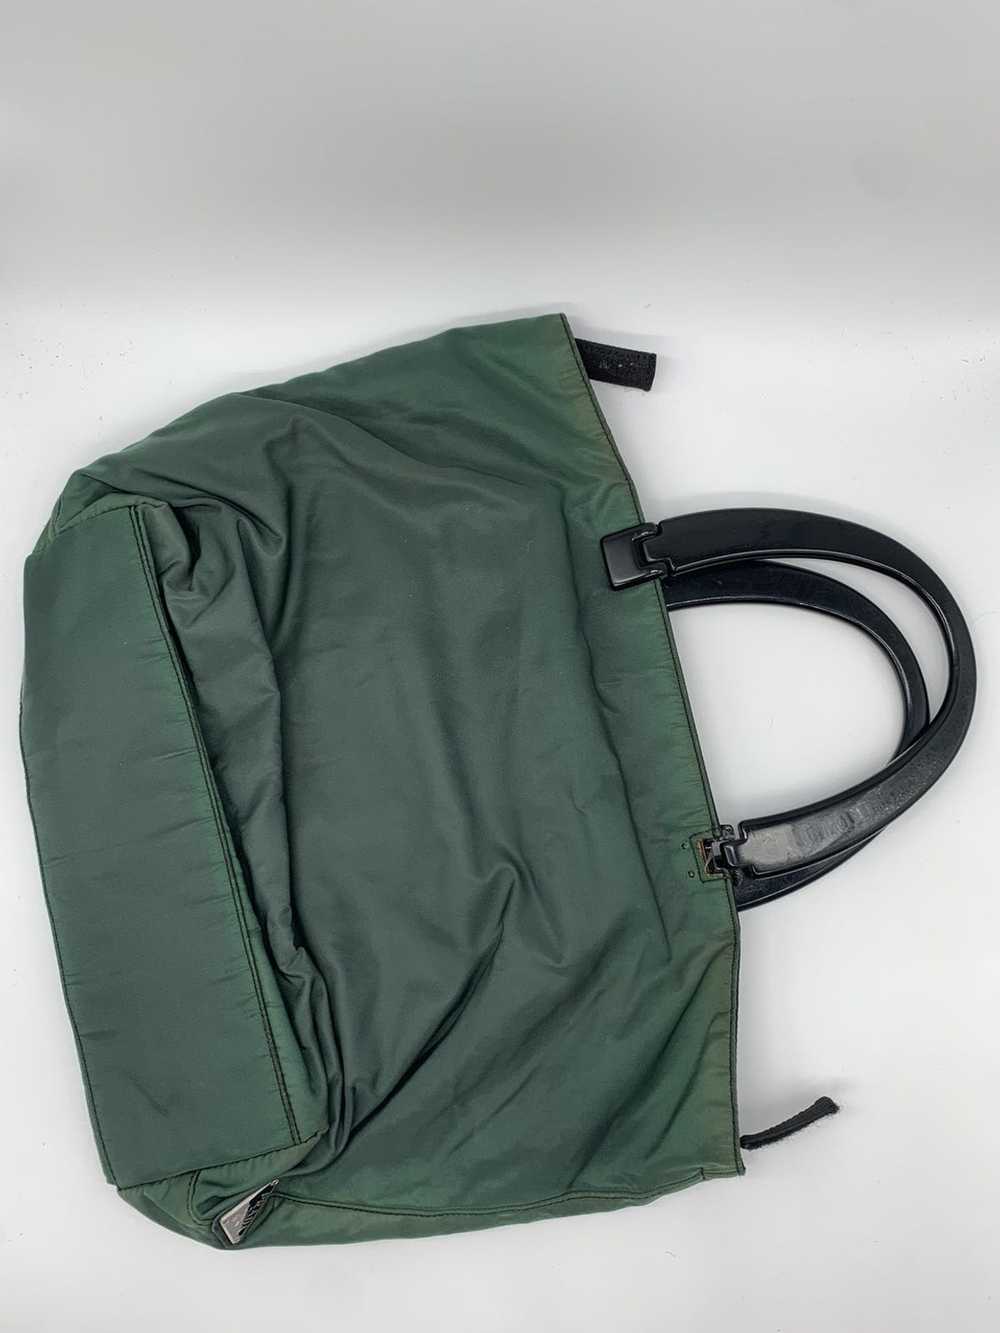 Prada Prada Green Nylon Handle Bag - image 2